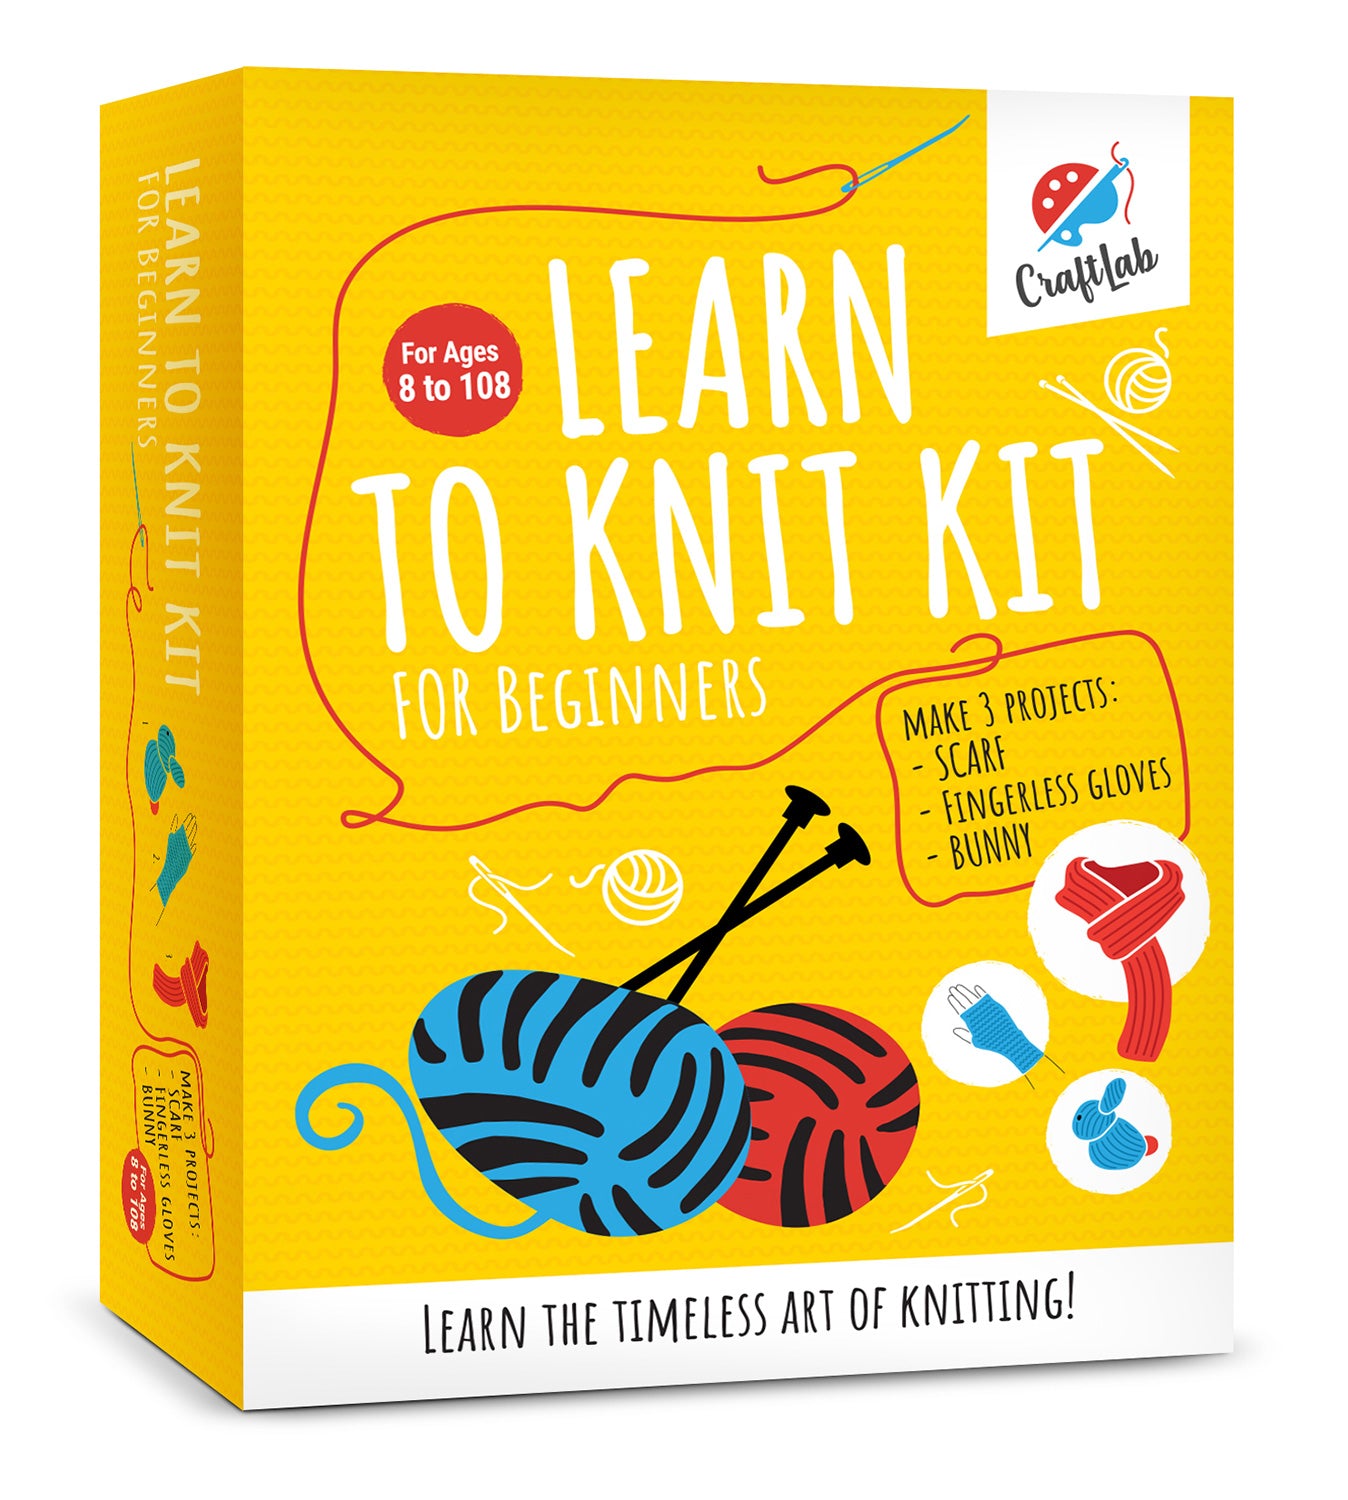 Knitting Starter Kit, Hand Knitting